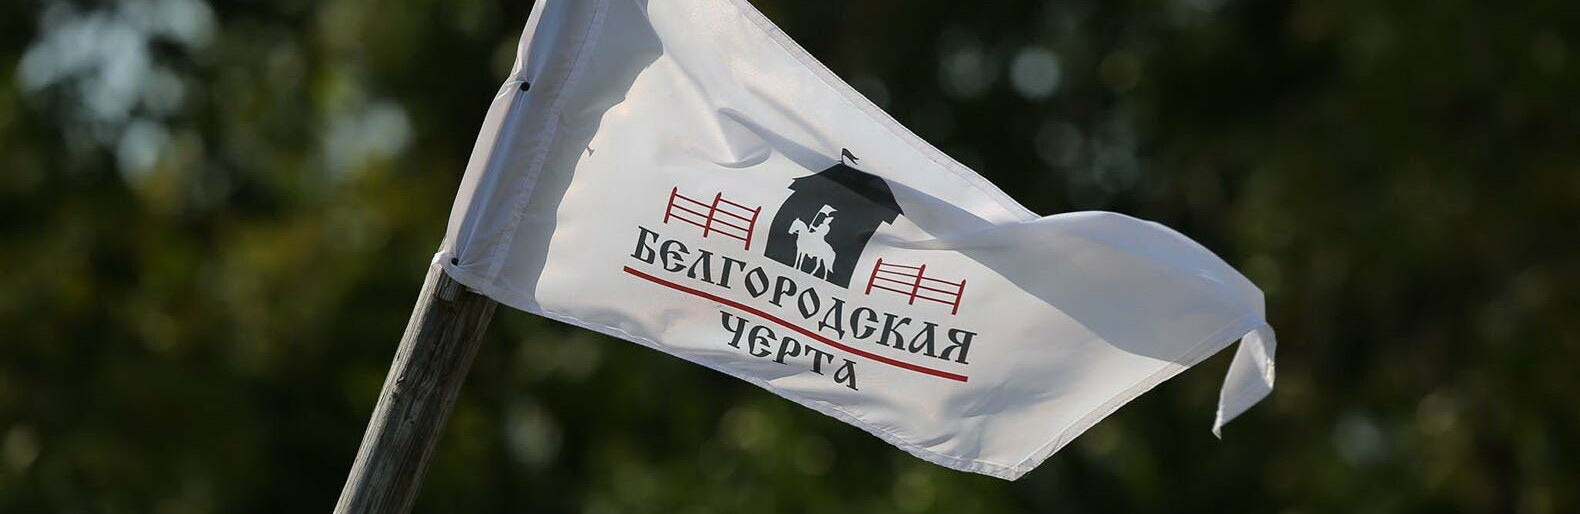 Фестиваль исторической реконструкции «Белгородская черта» пройдёт 3 сентября